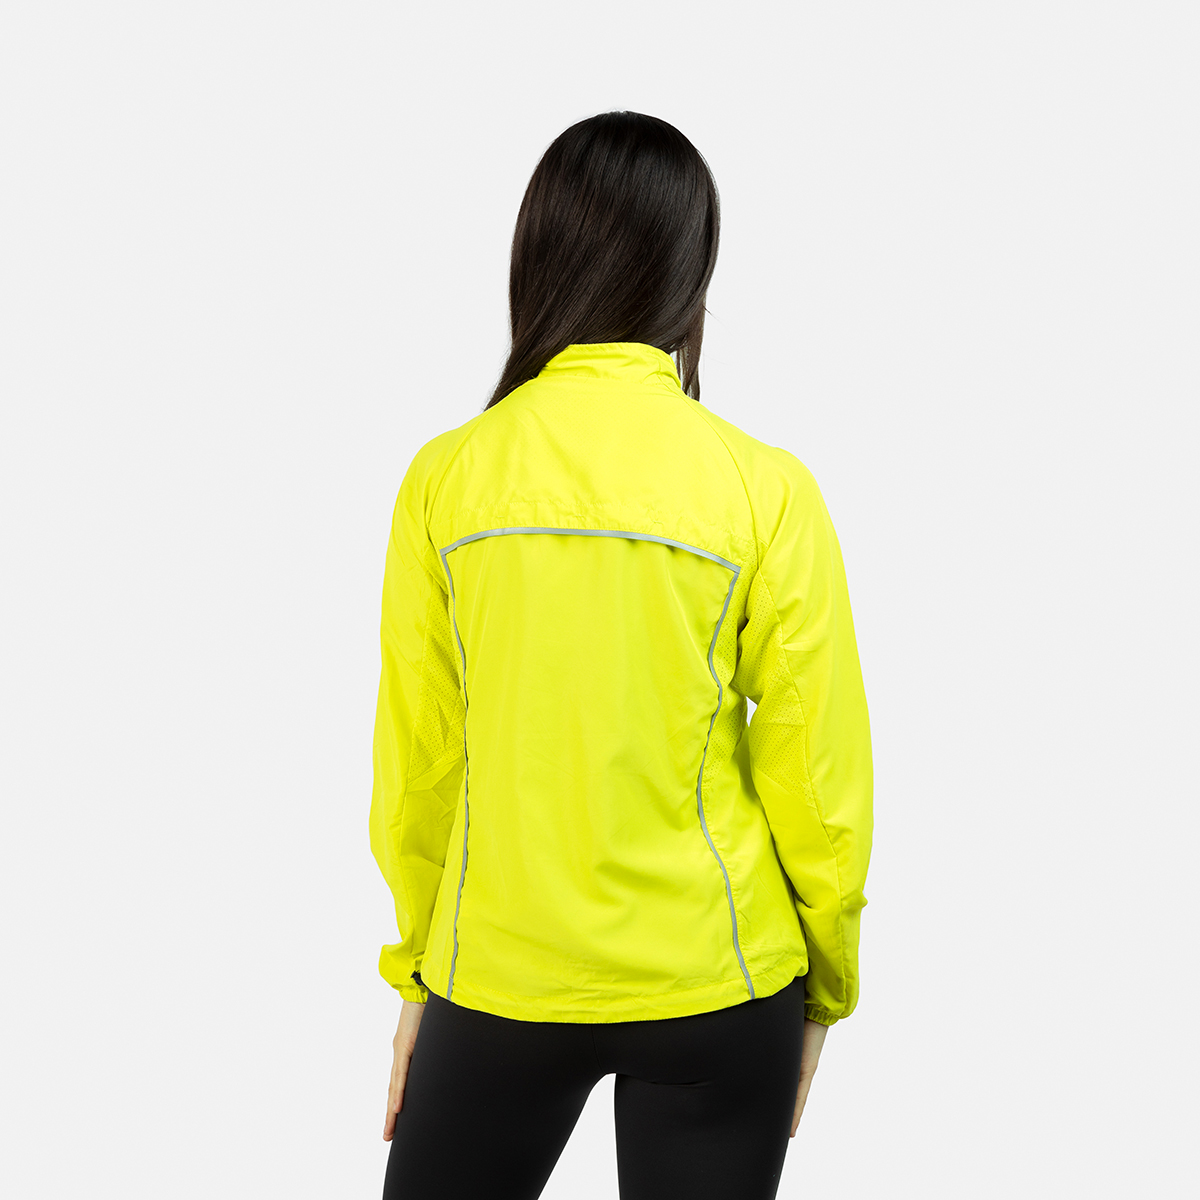  black running jacket woman ii isona